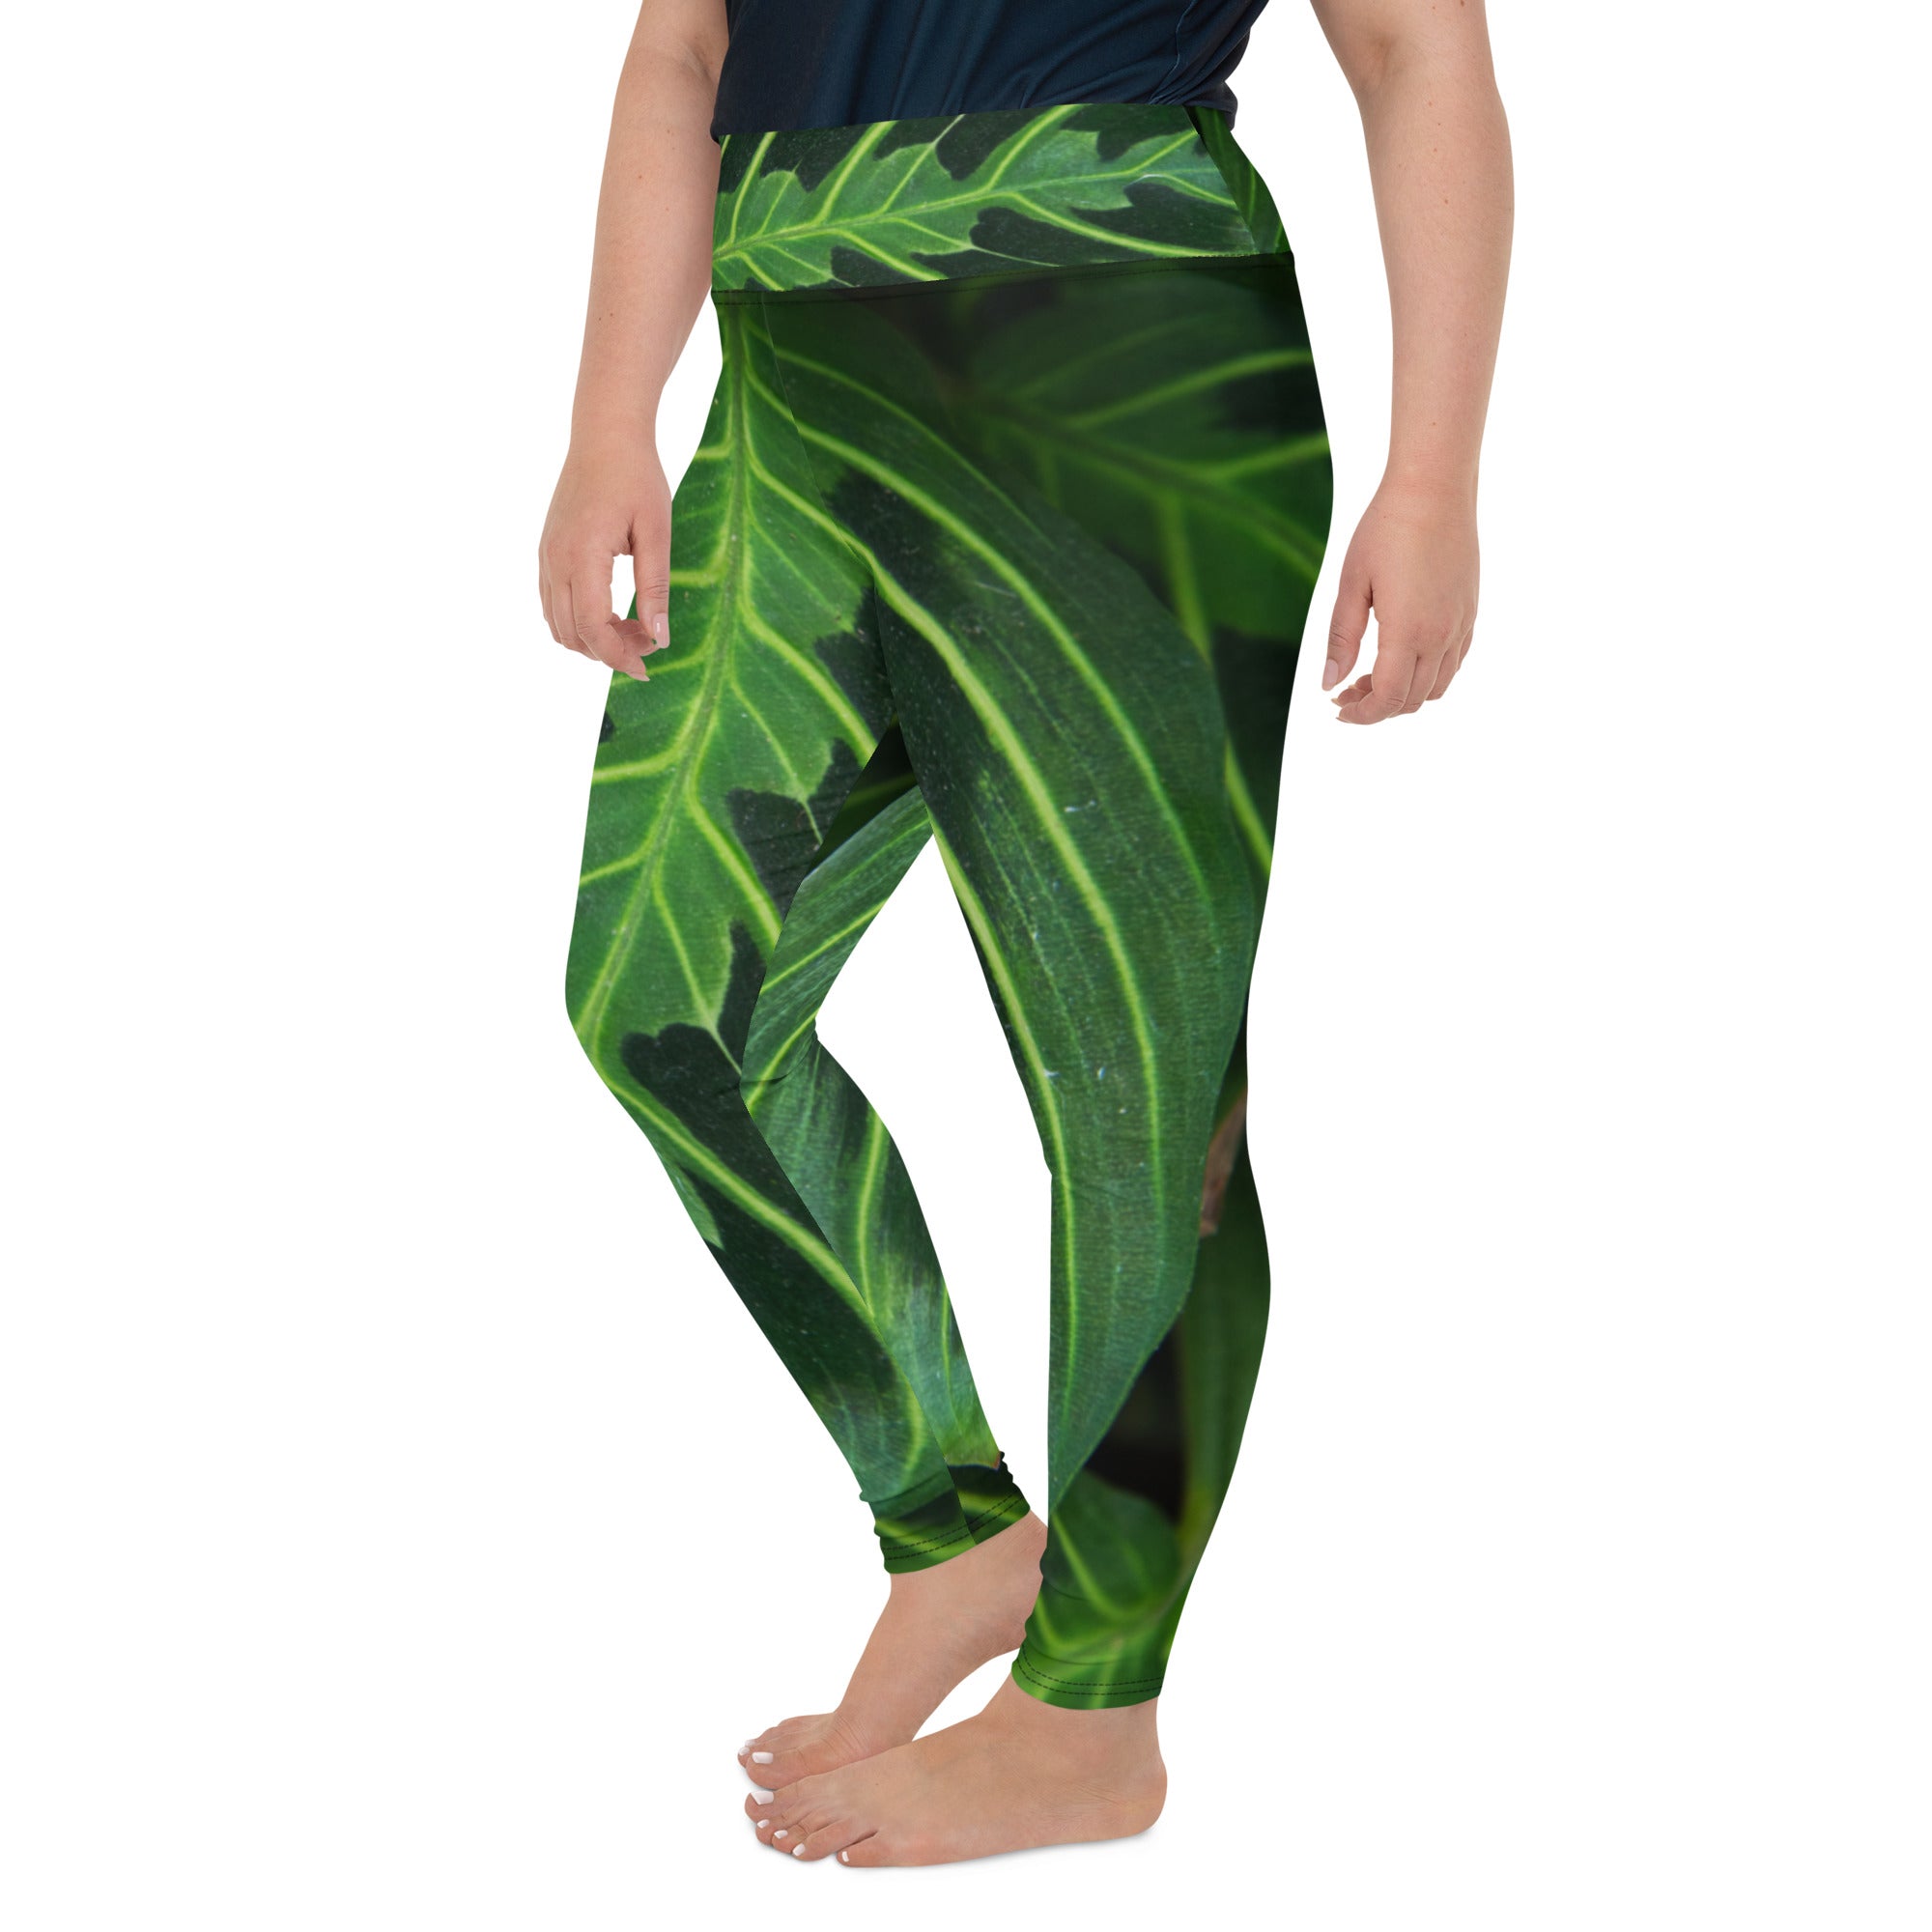 Green Arrow Plus Size Leggings